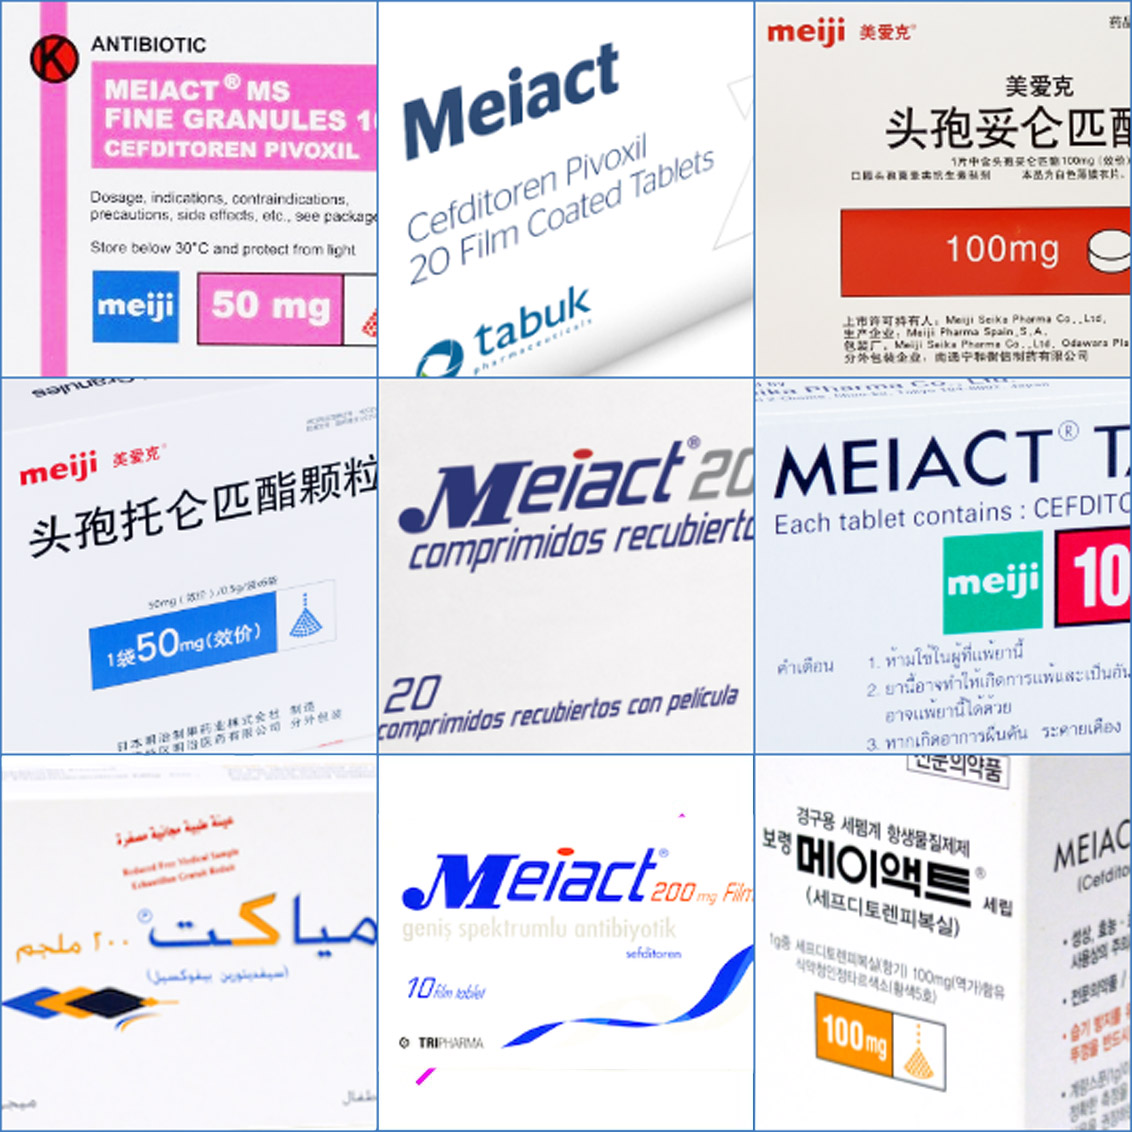 Meiact 抗生素在世界各地销售的照片